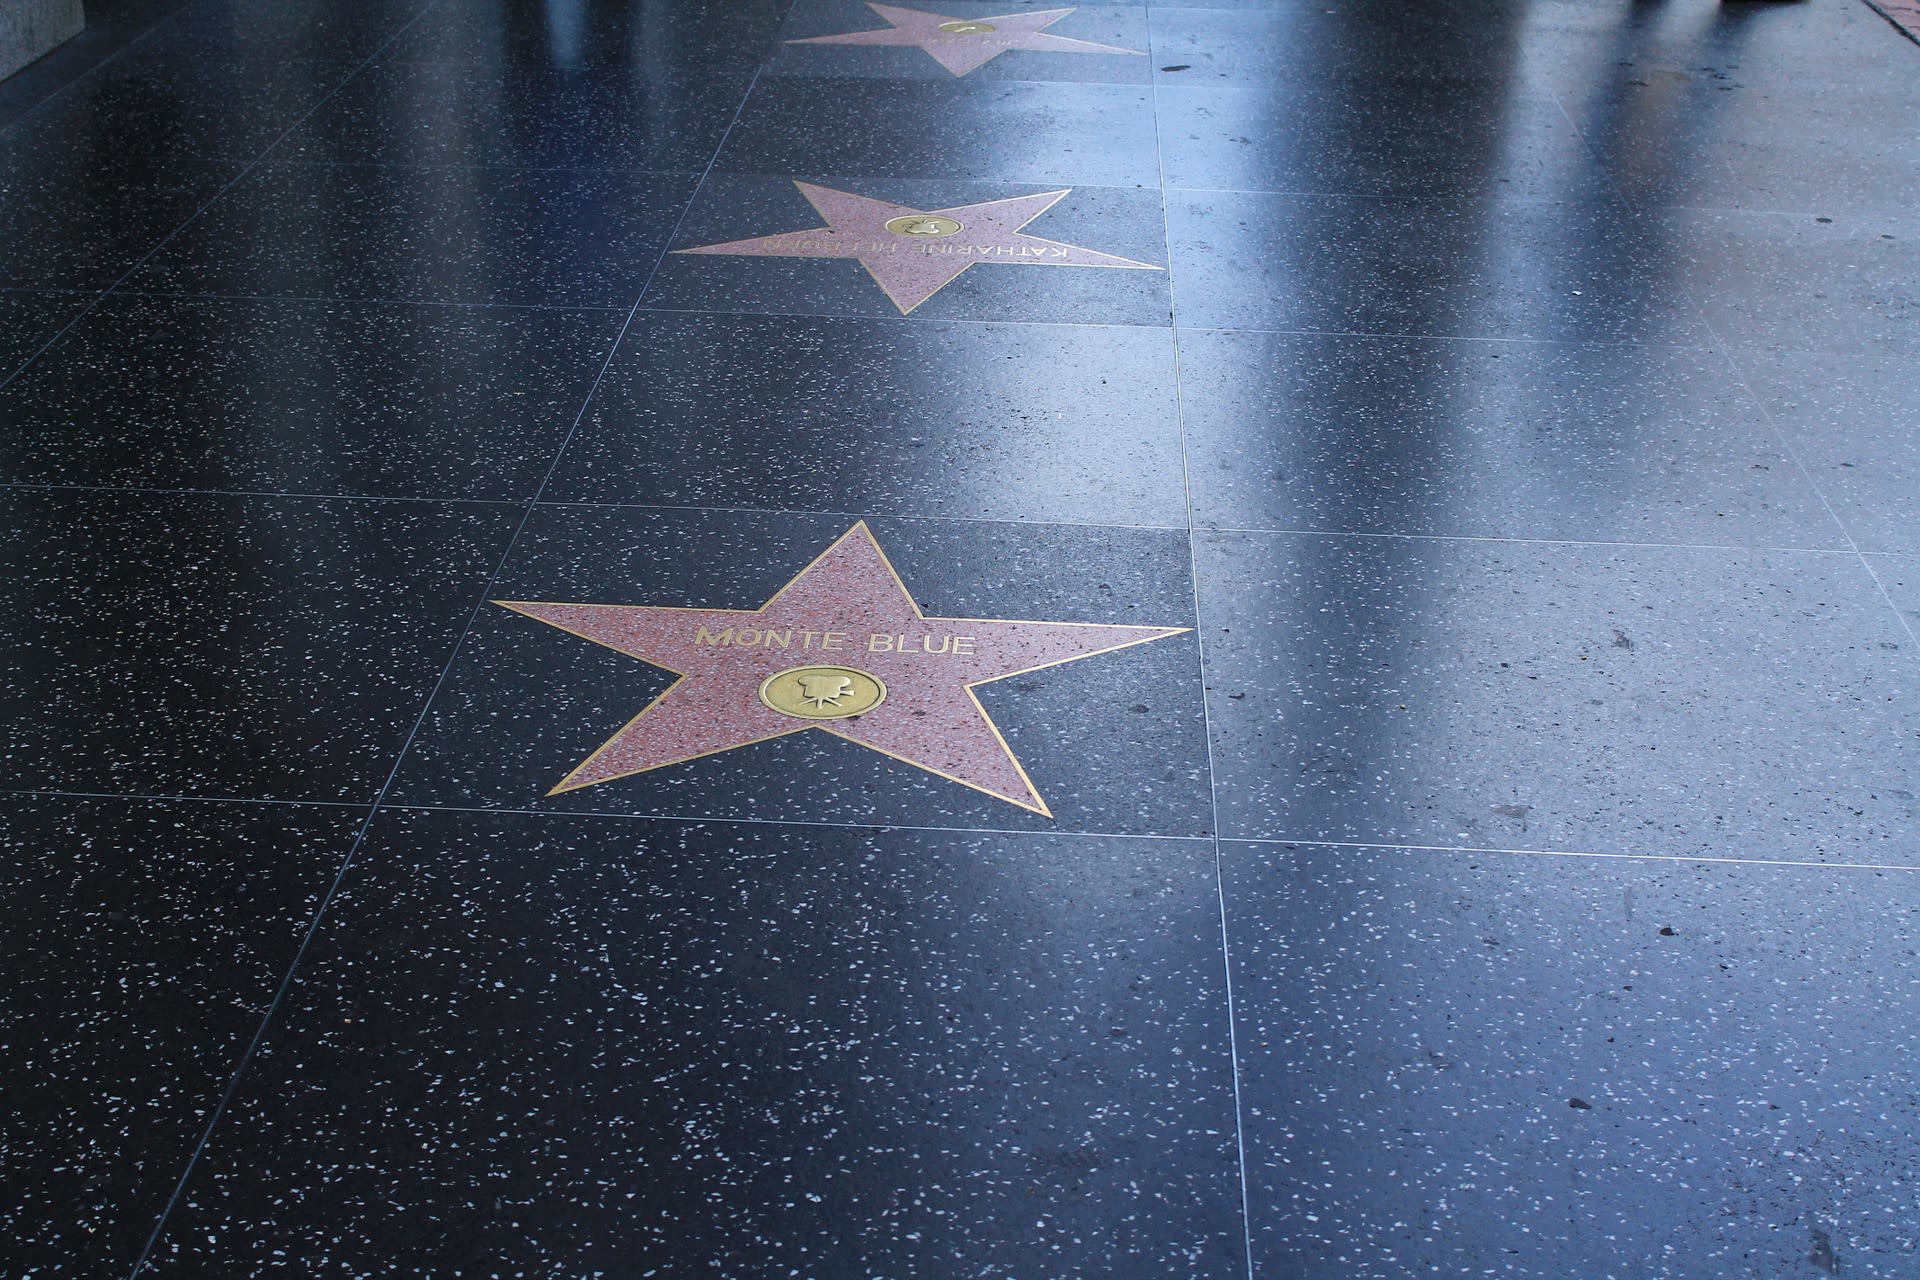 Hollywoodský chodník slávy